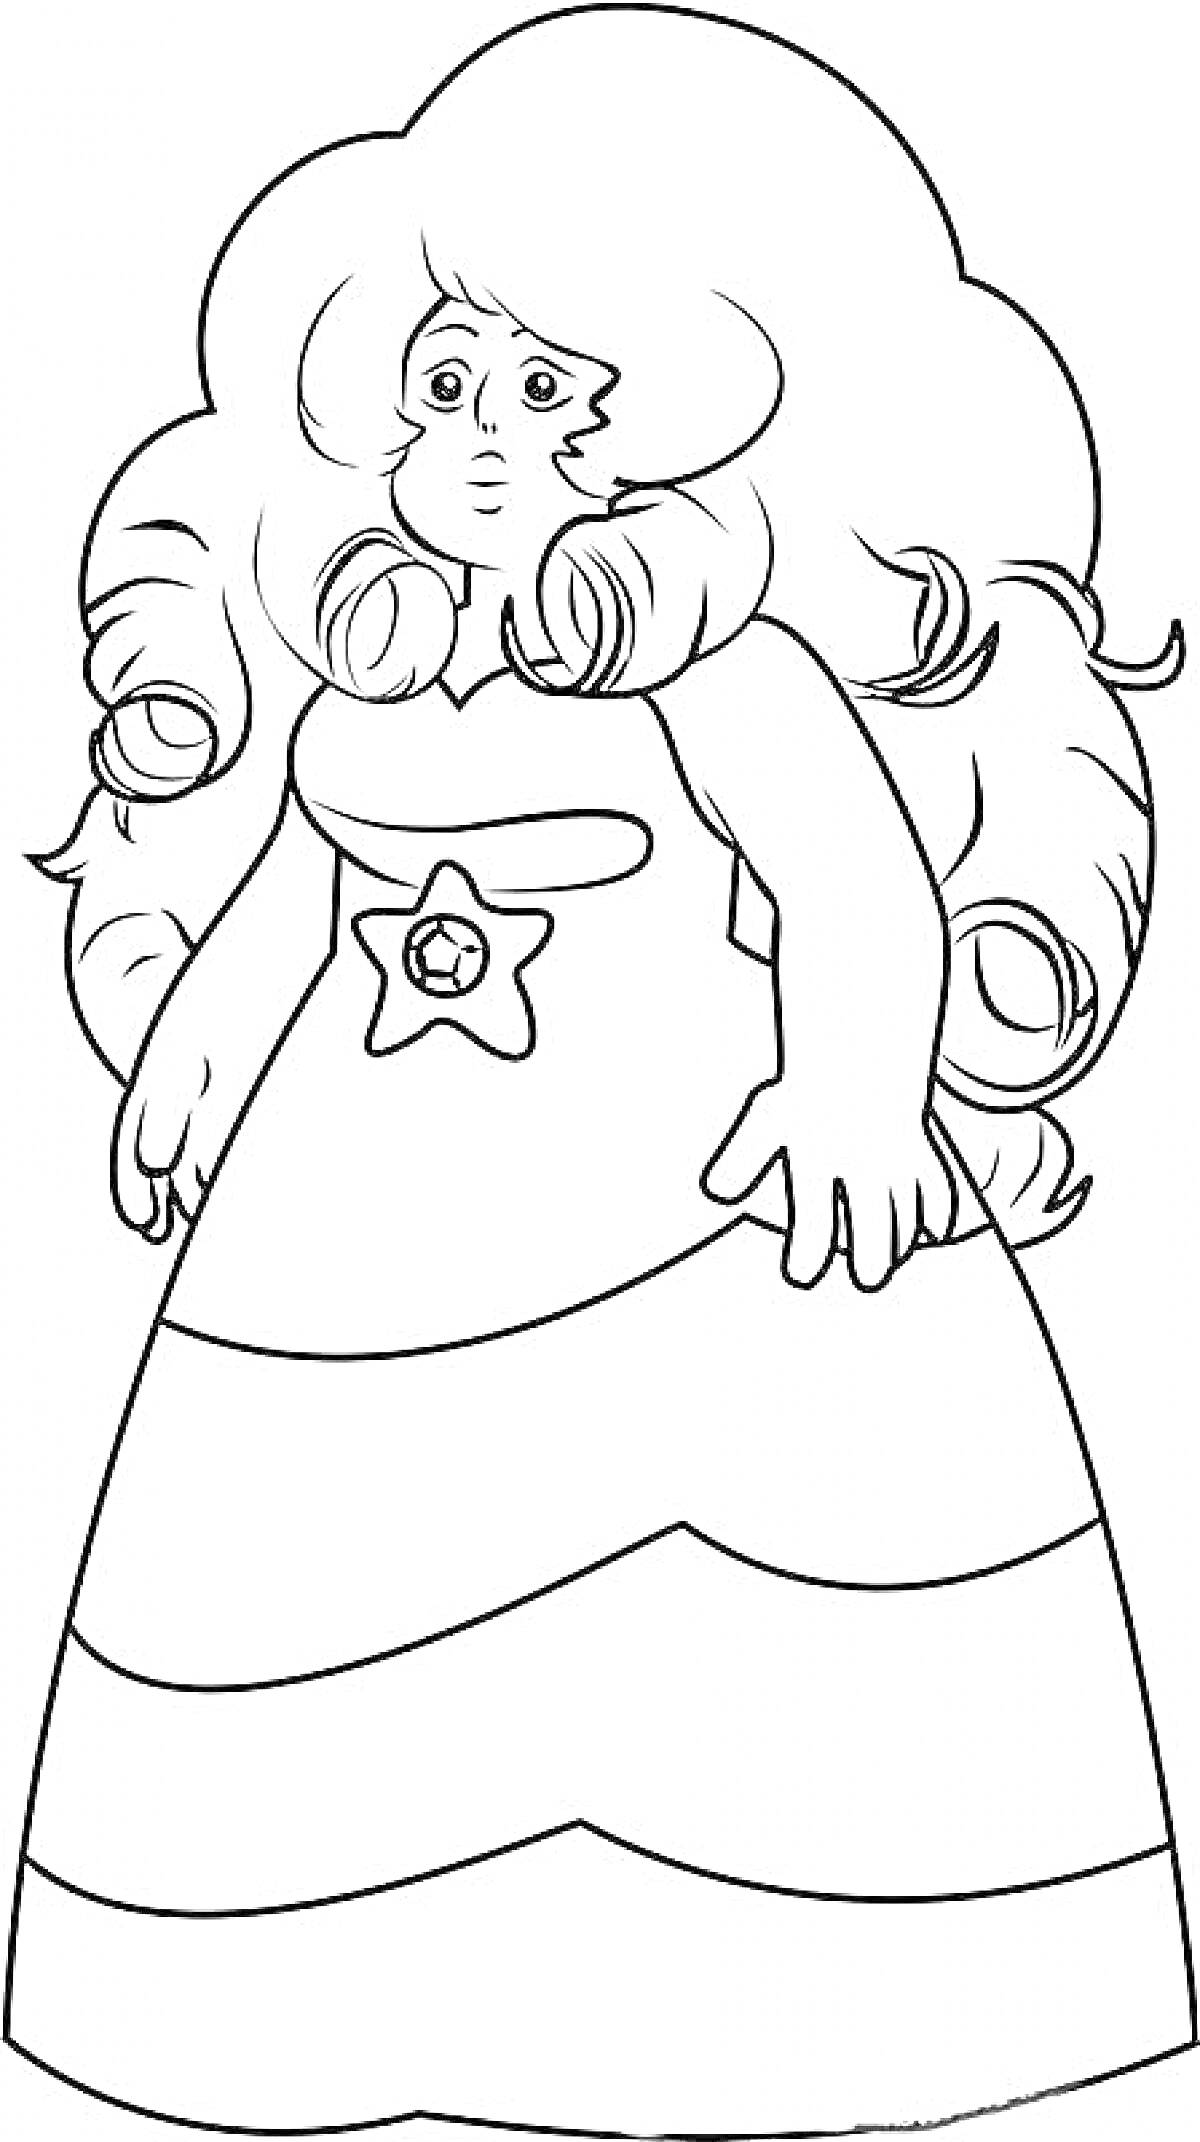 Раскраска Раскраска персонажа с длинными волосами, в платье со звездой на талии и полосками